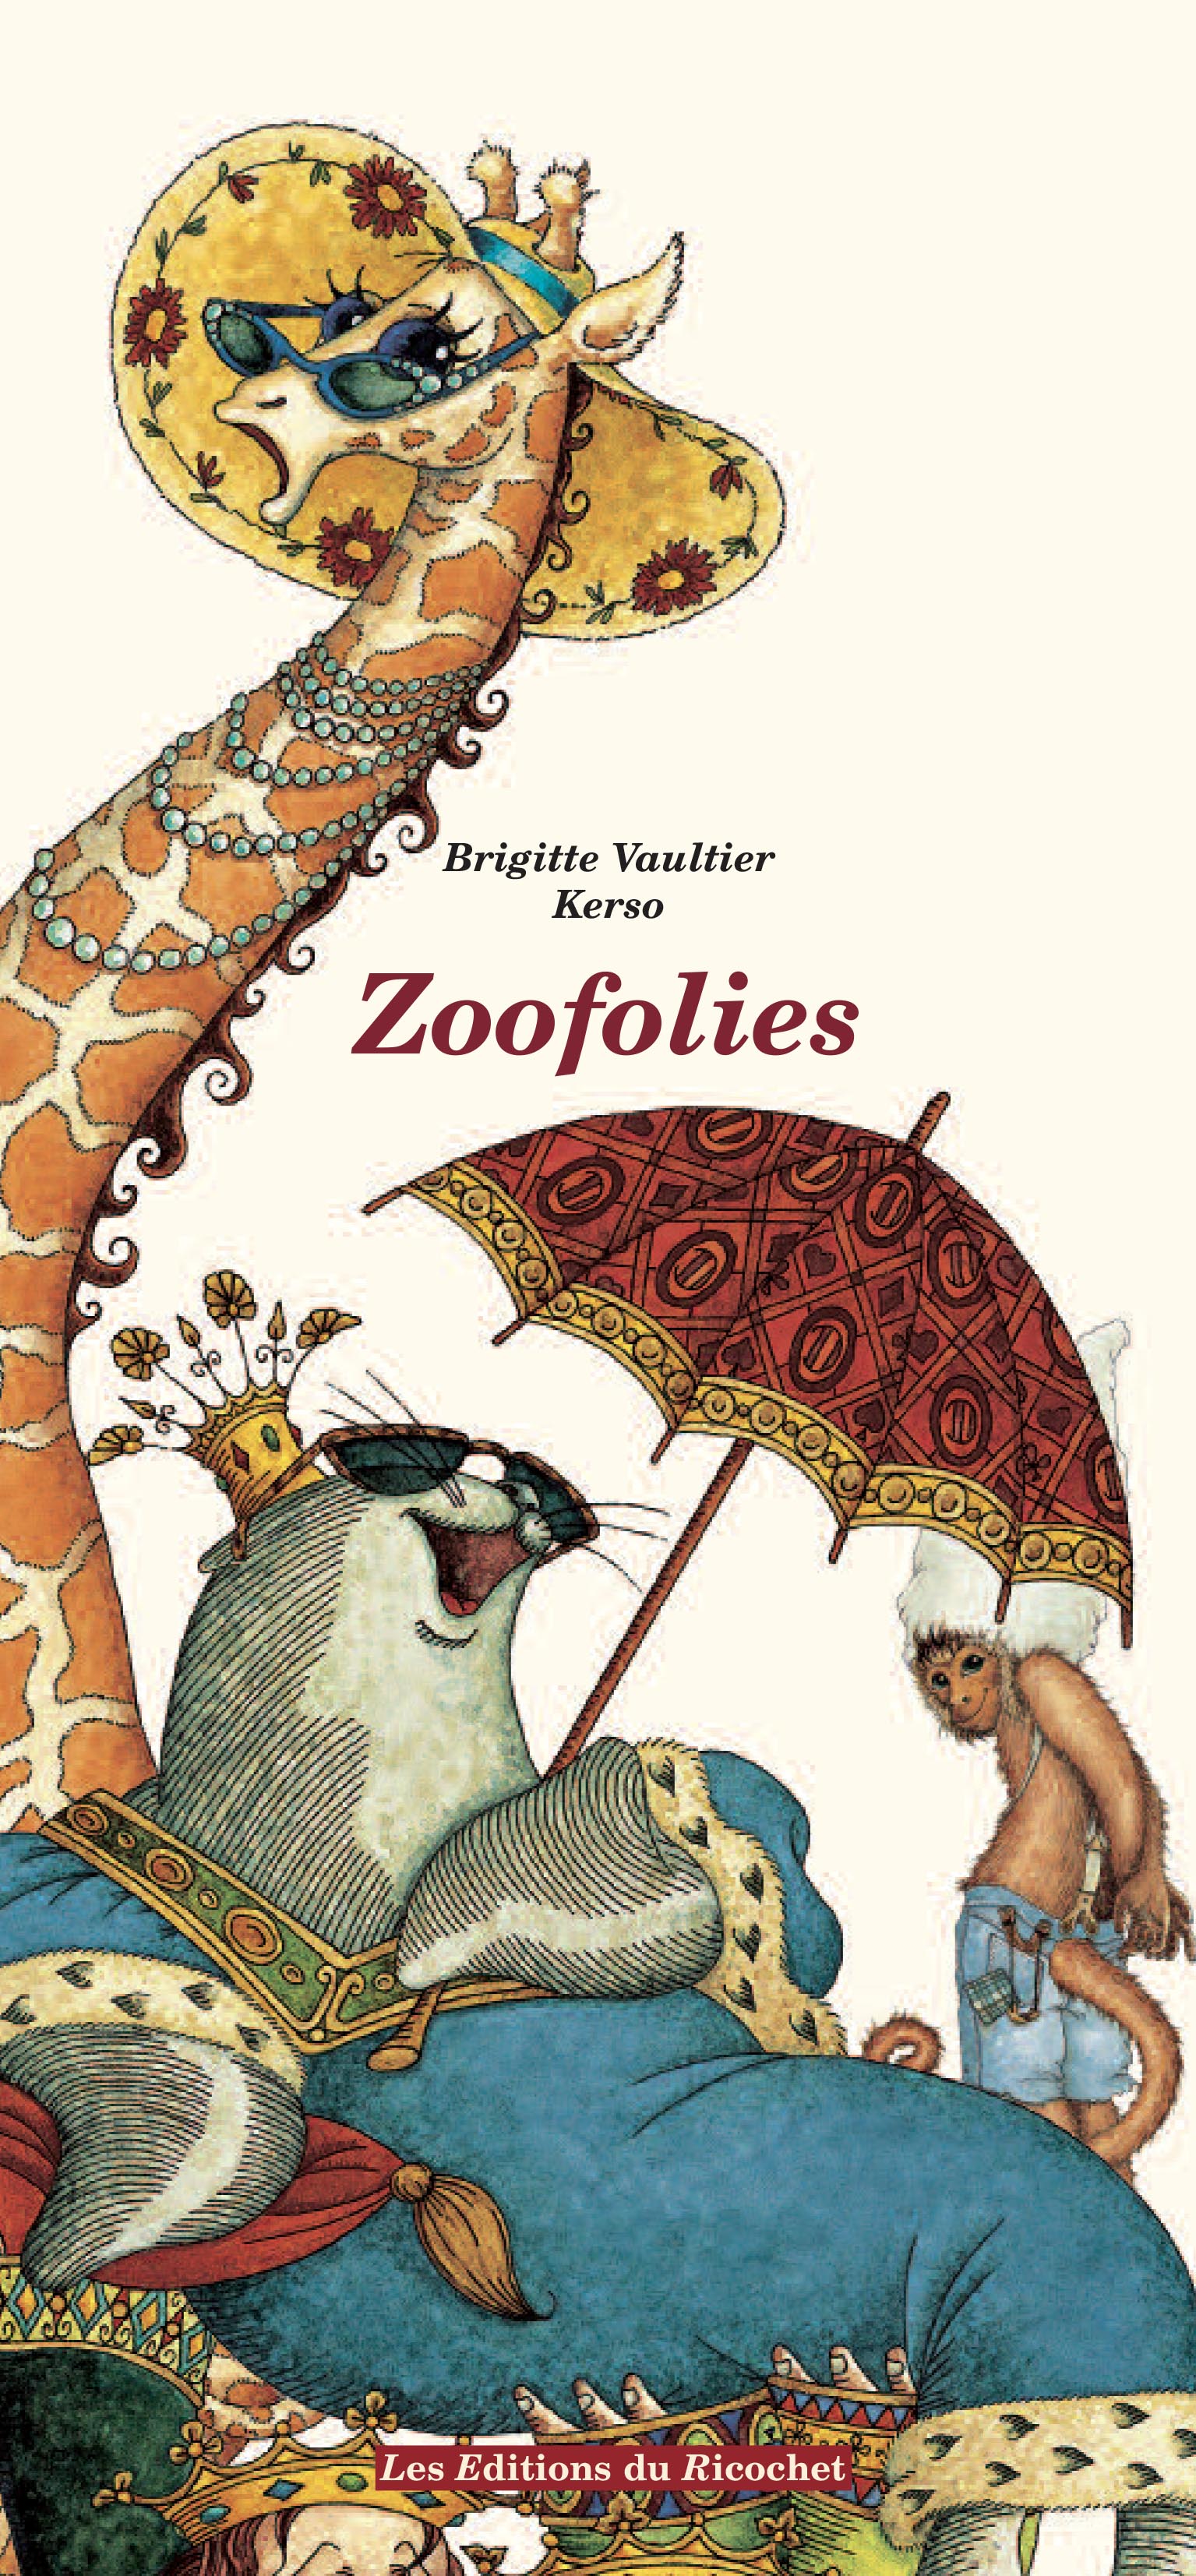 Zoofolies - Fables et portraits d’animaux burlesques